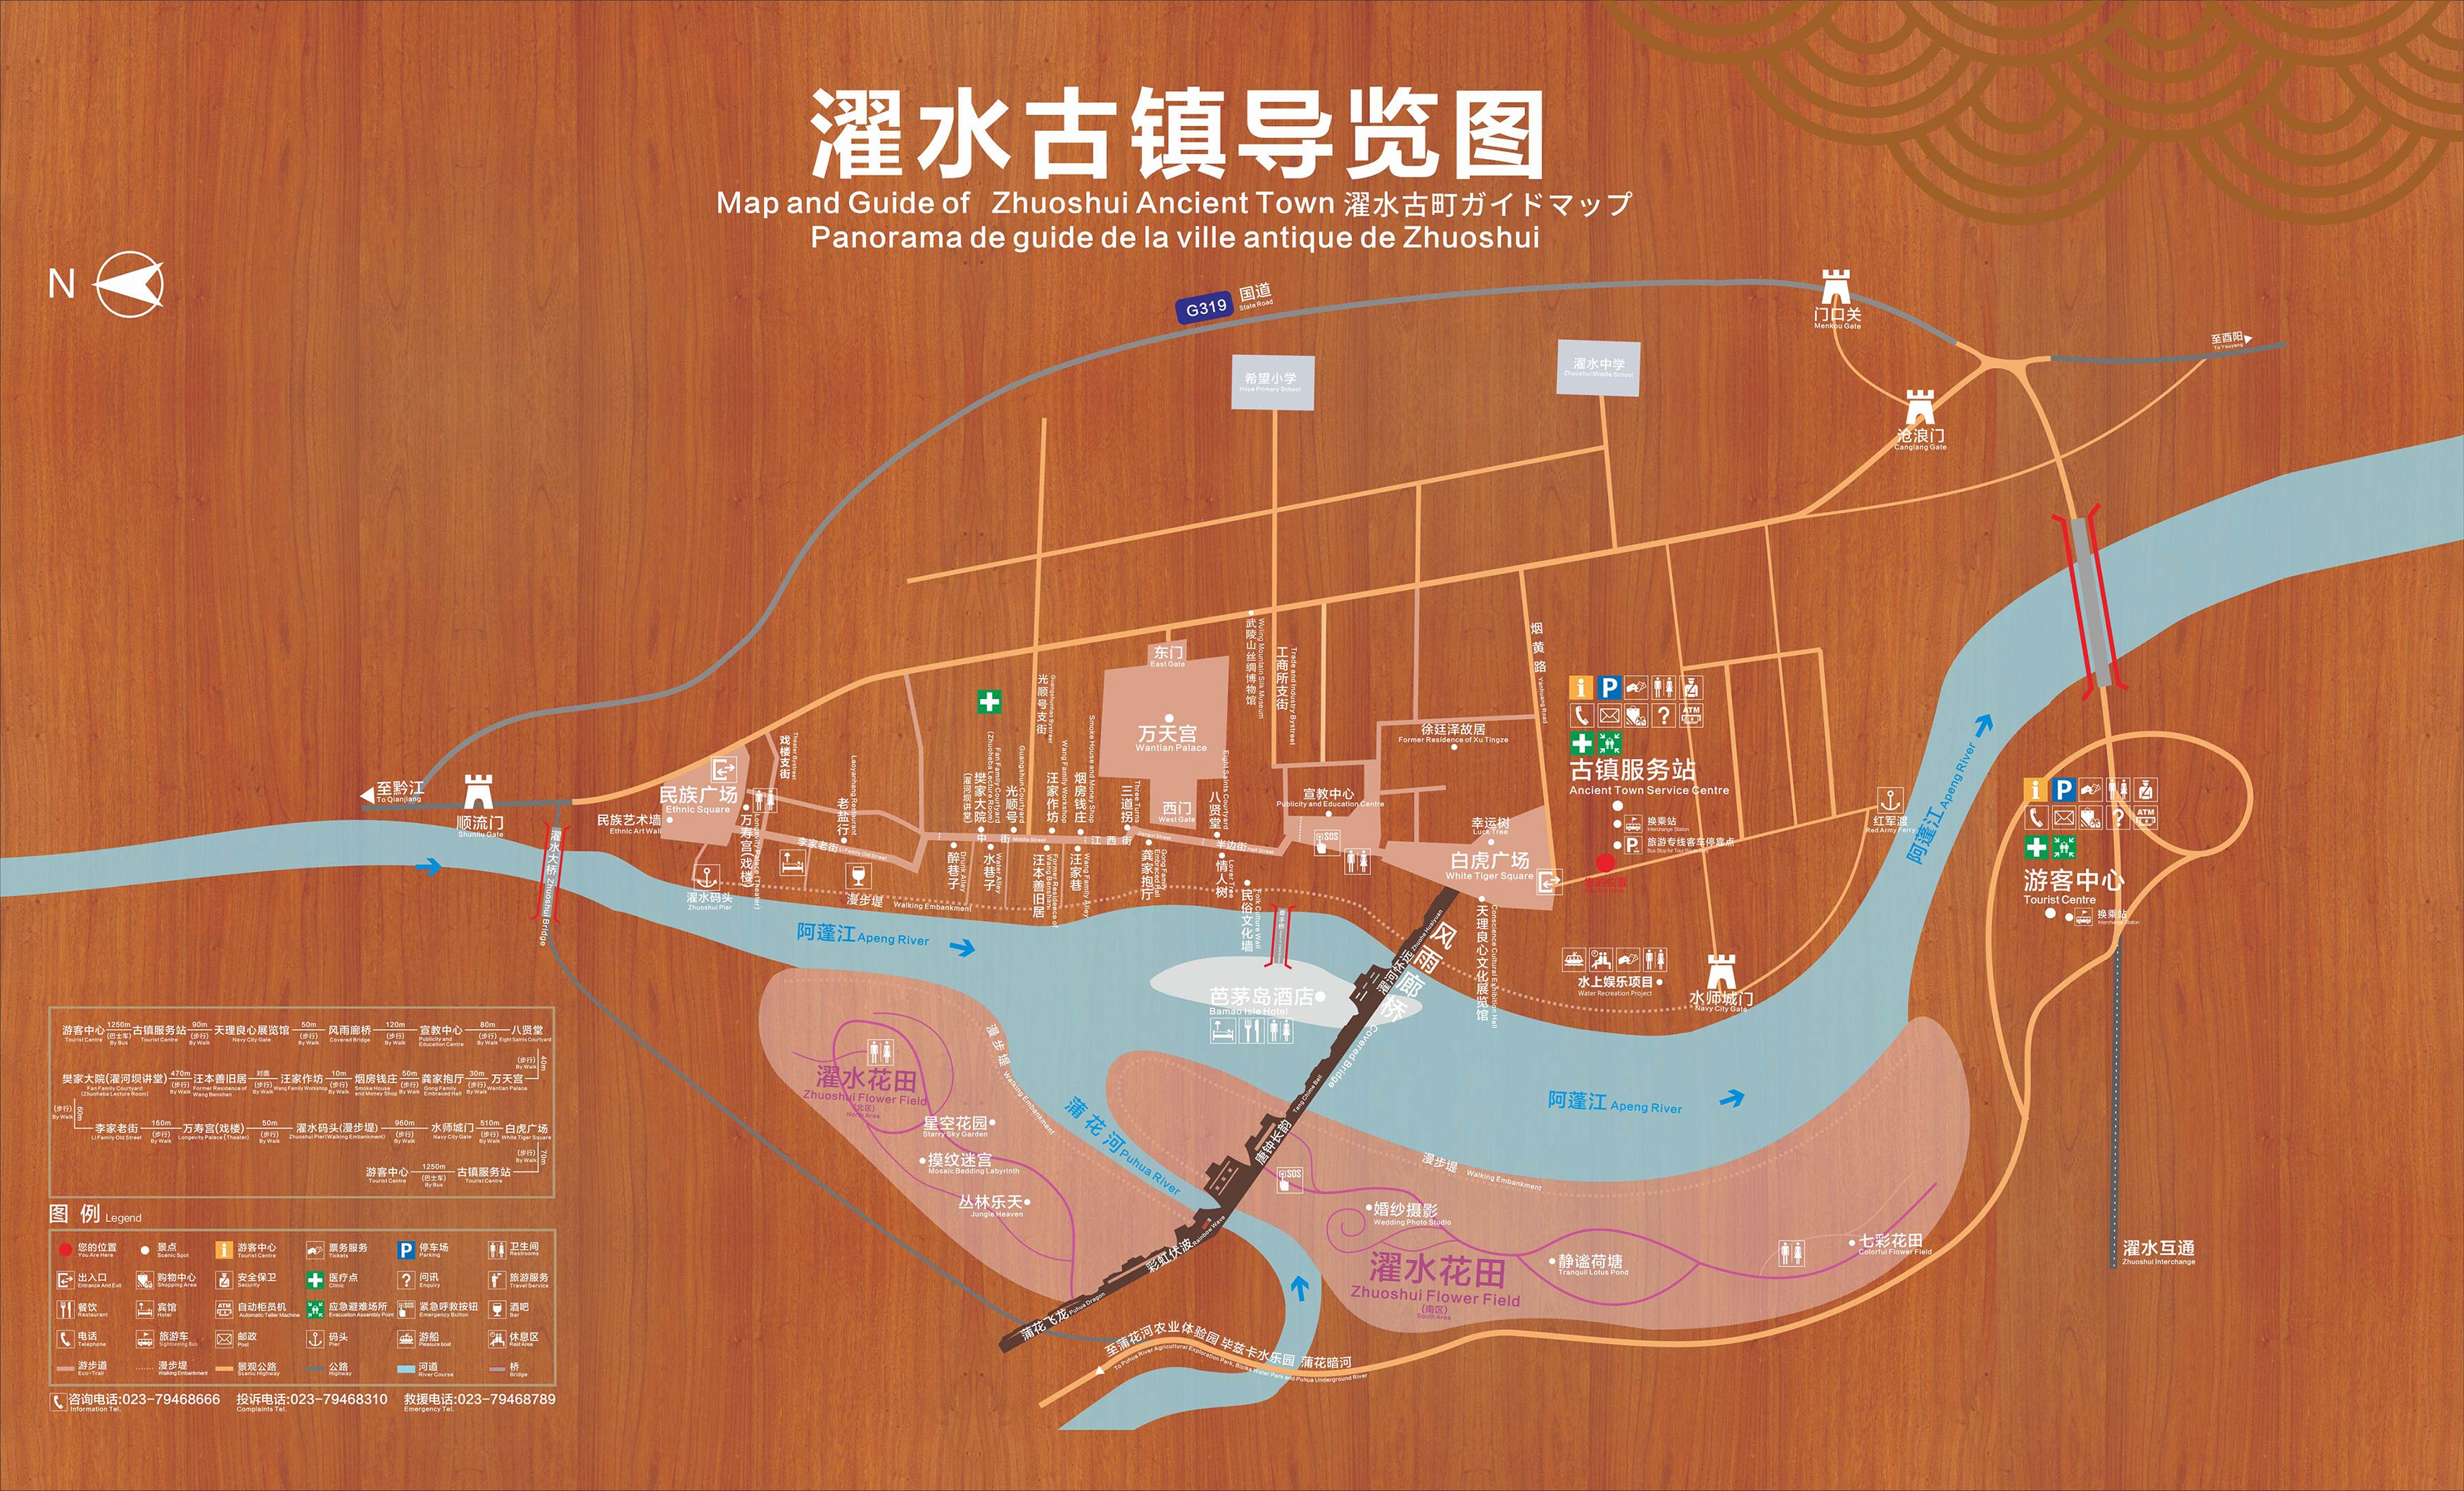 重庆发布《重庆梯田地图》 重庆市主要梯田景观一览- 重庆本地宝